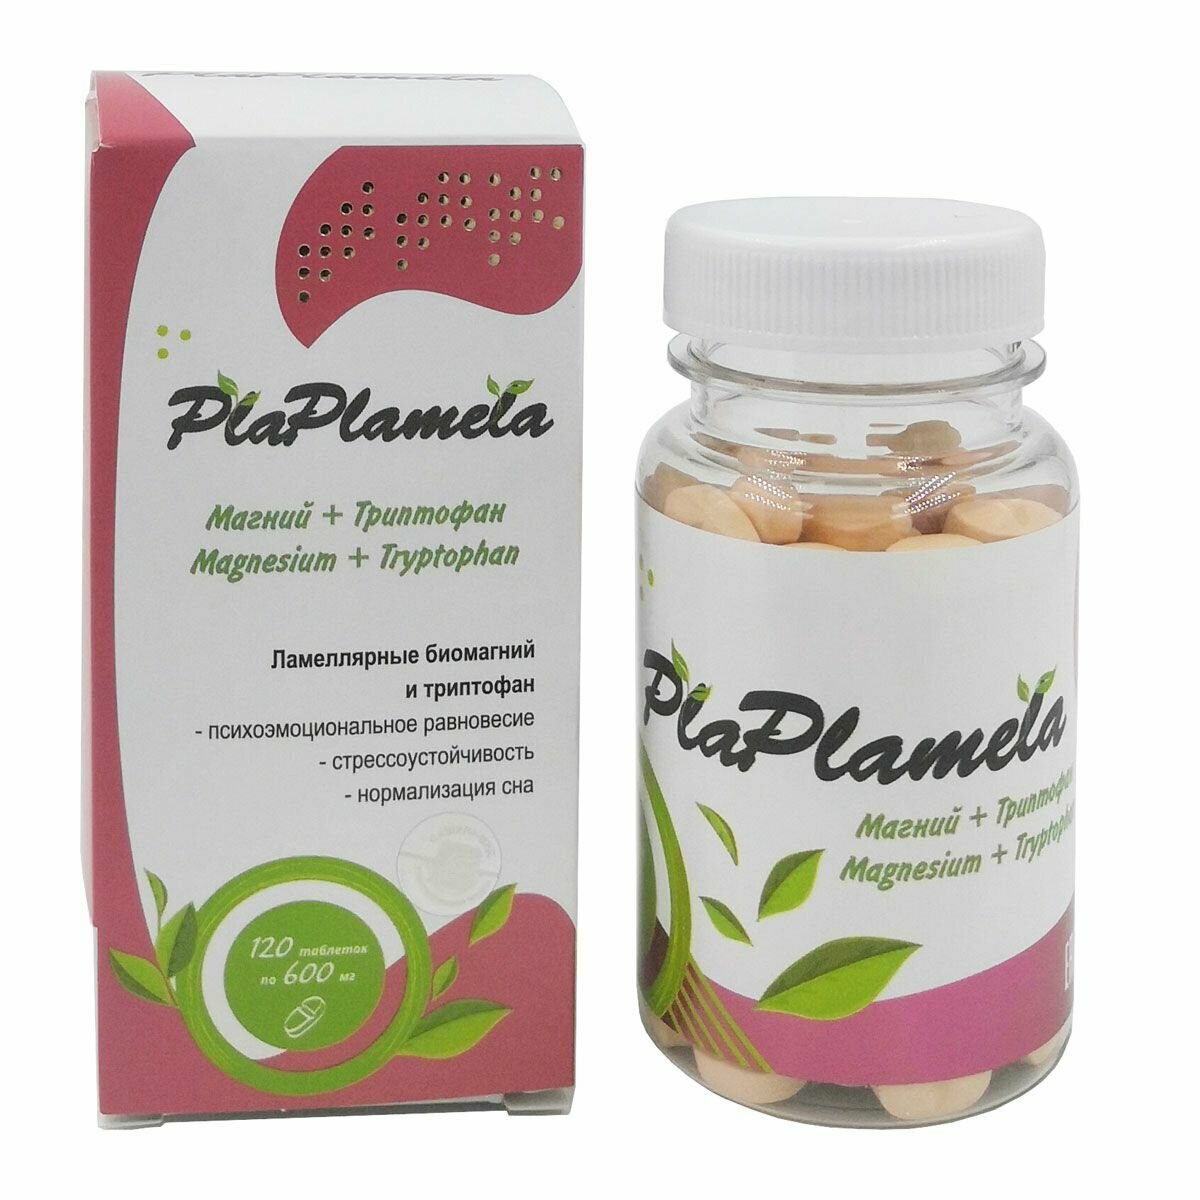 PlaPlamela Магний и триптофан, 120 таблеток. Пищевая добавка для нервной системы, памяти, при стрессе, депрессии и нарушениях сна